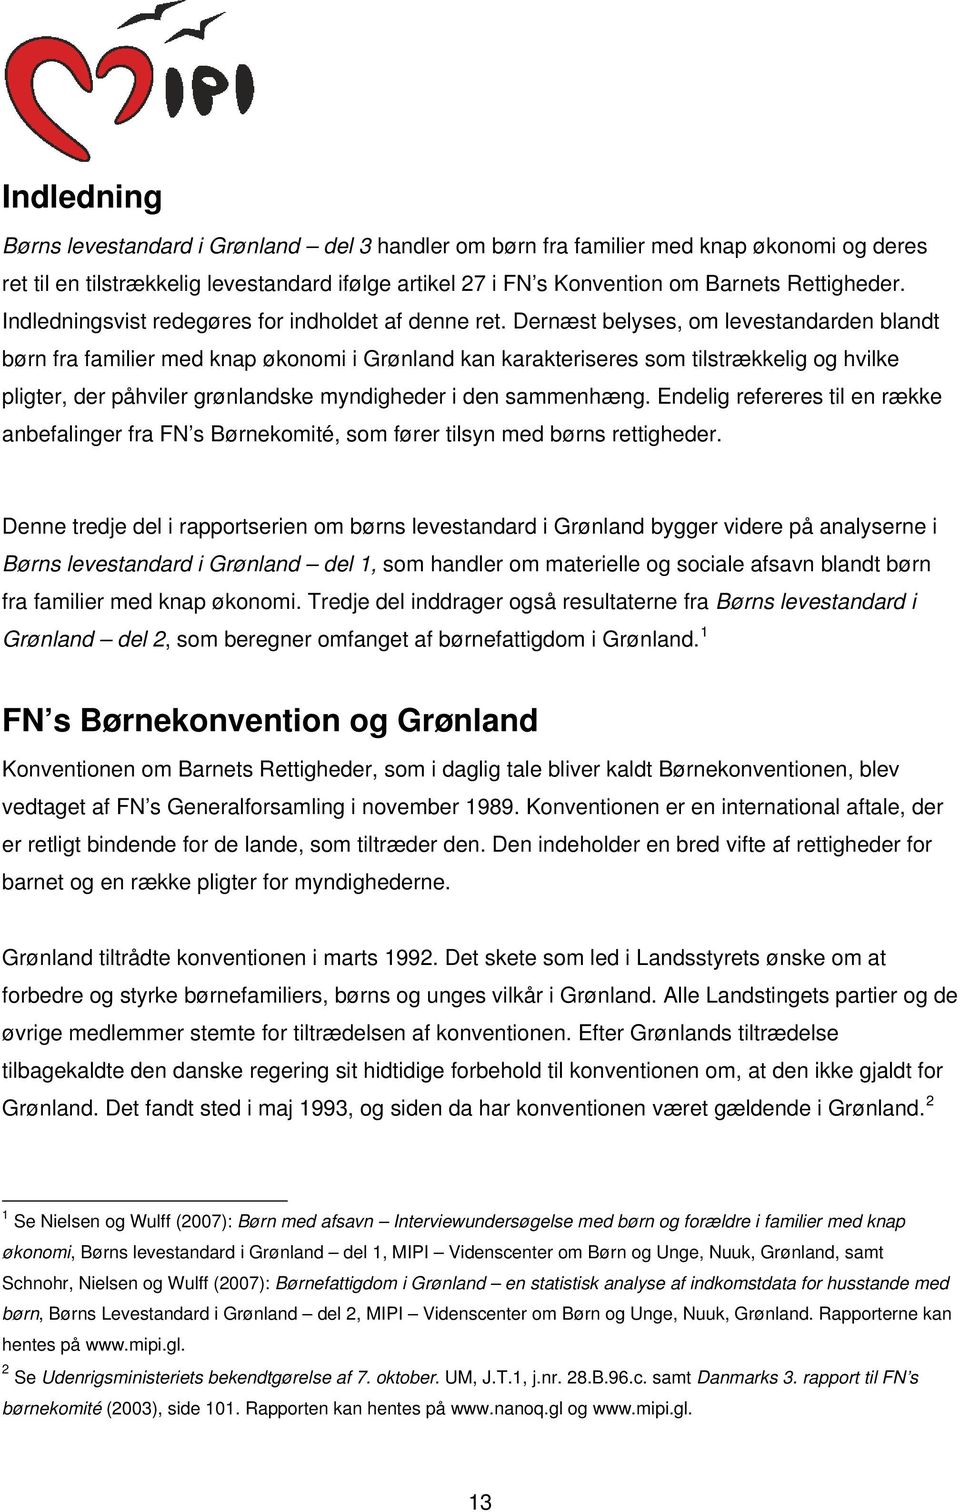 Dernæst belyses, om levestandarden blandt børn fra familier med knap økonomi i Grønland kan karakteriseres som tilstrækkelig og hvilke pligter, der påhviler grønlandske myndigheder i den sammenhæng.